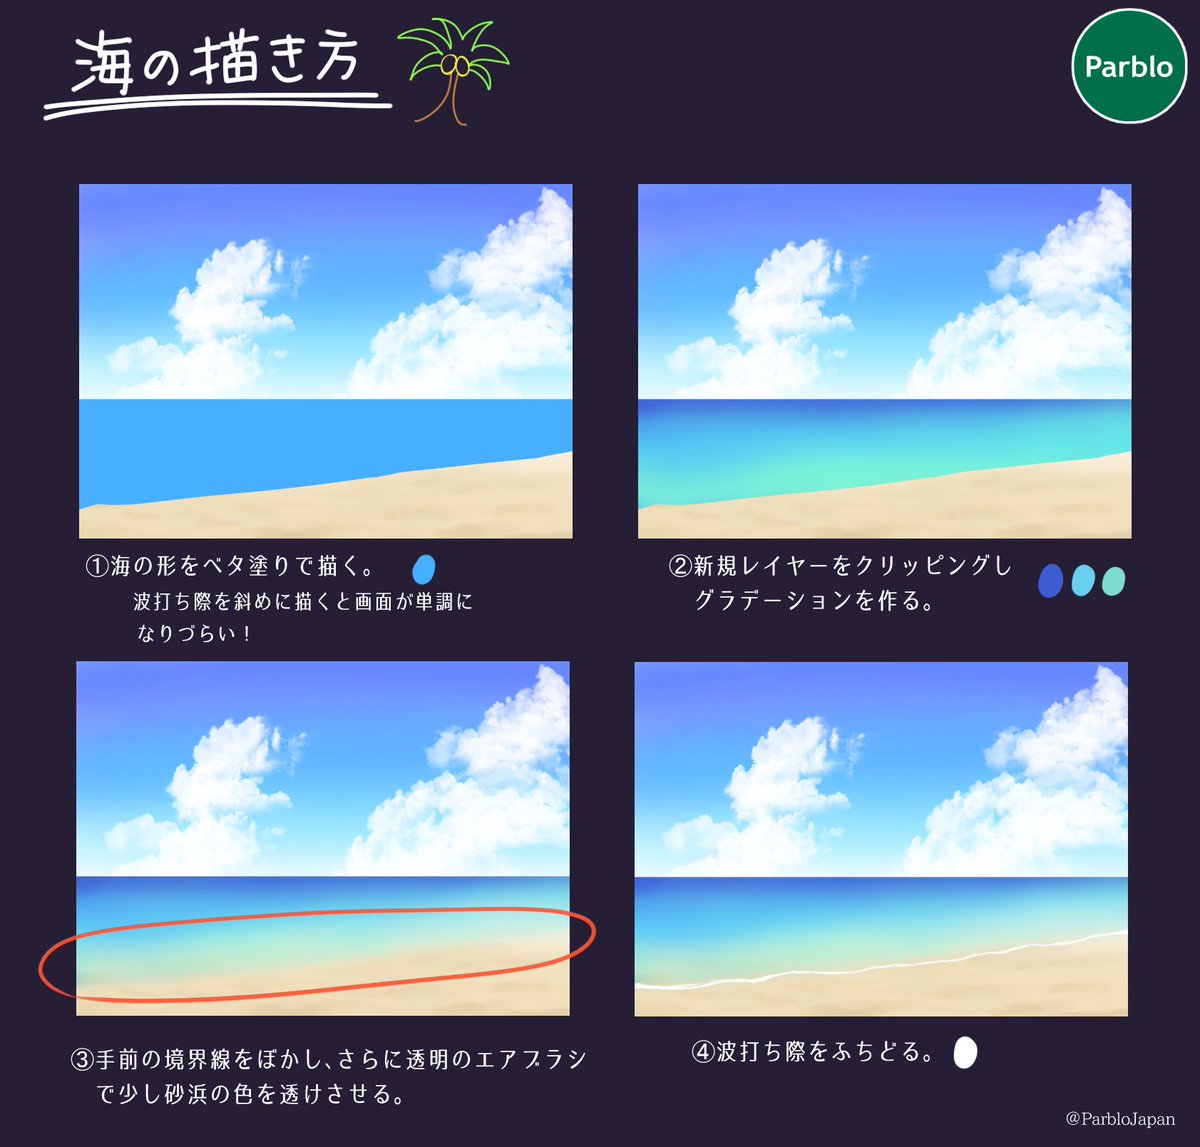 O Xrhsths Parblo Japan Sto Twitter 本日はこれからの時期に備えて海の描き方をご紹介します 空の描き方は前のツイートをみてね 水着を着たキャラなどの背景に添えてみてください イラスト好きな人と繋がりたい 絵描きさんと繋がりたい Parblo